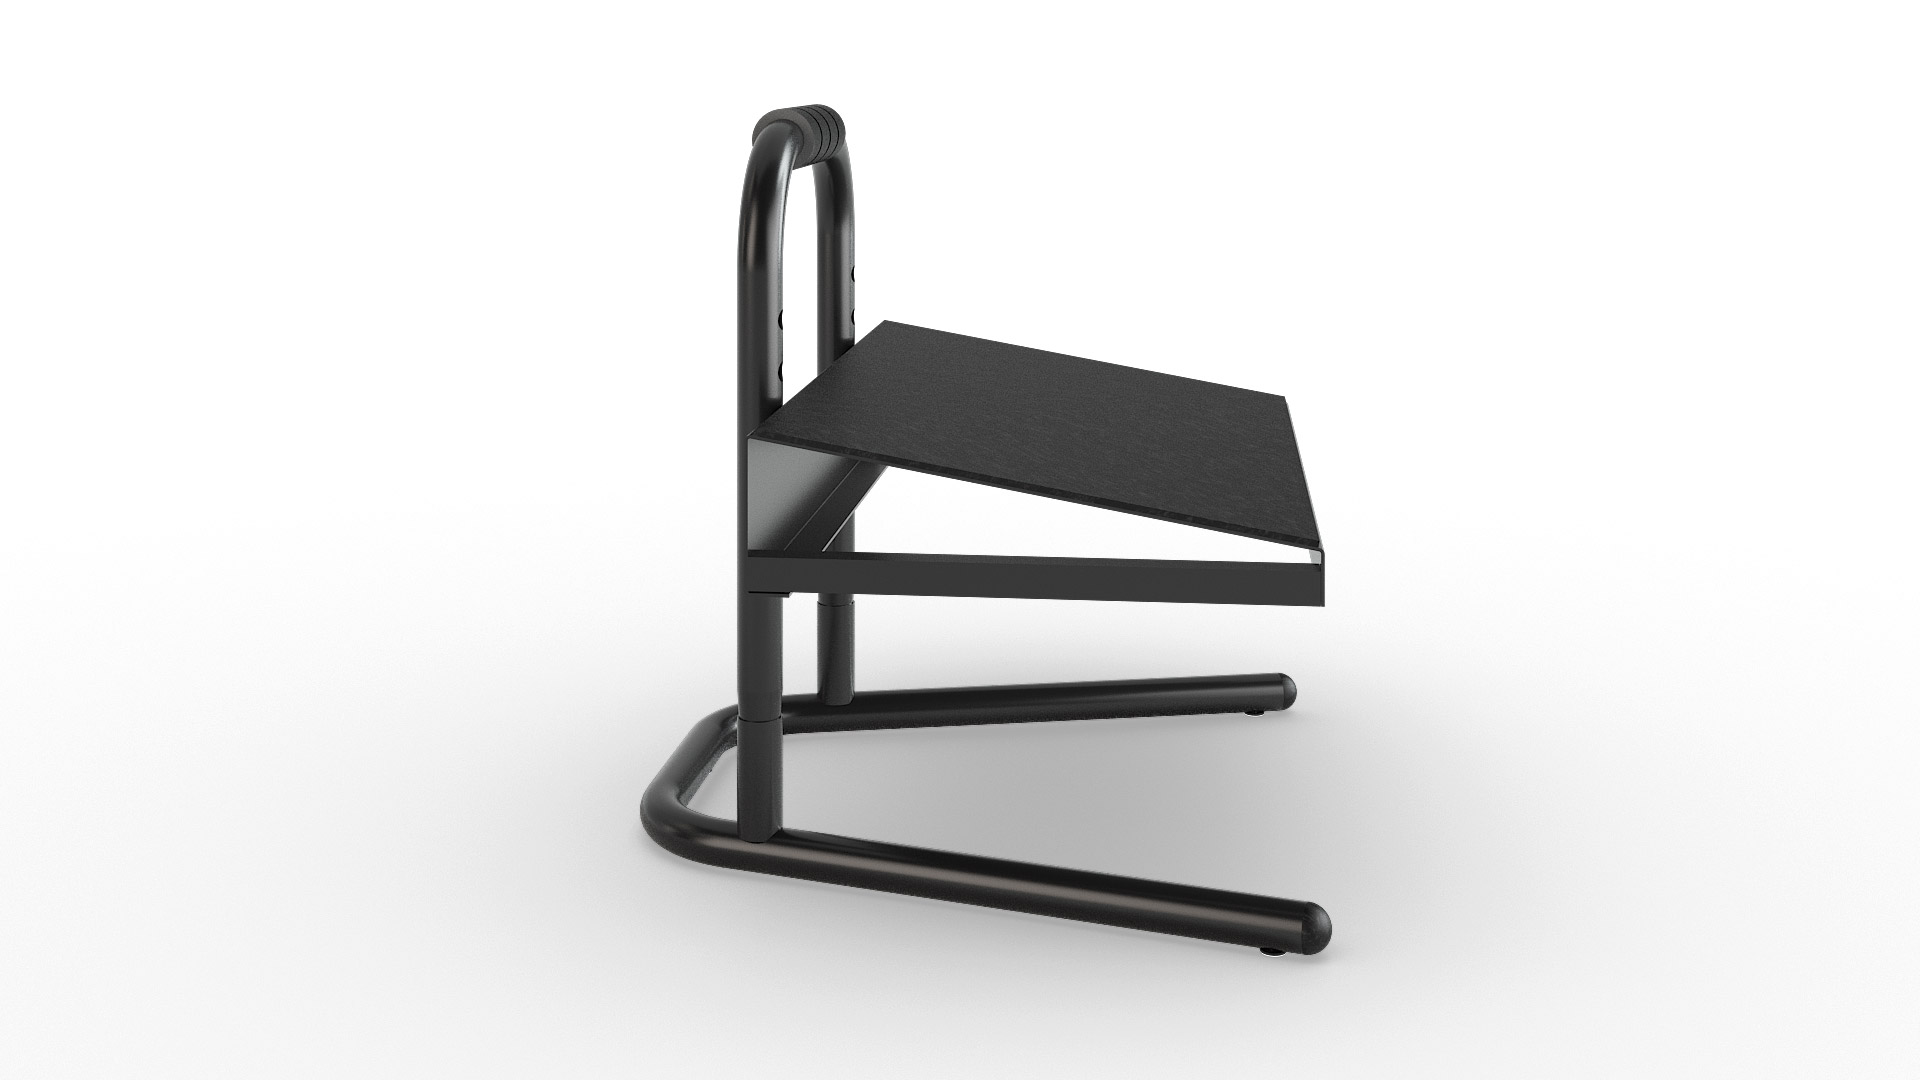 FRL2016 Industrial Height Adjustable Footrest